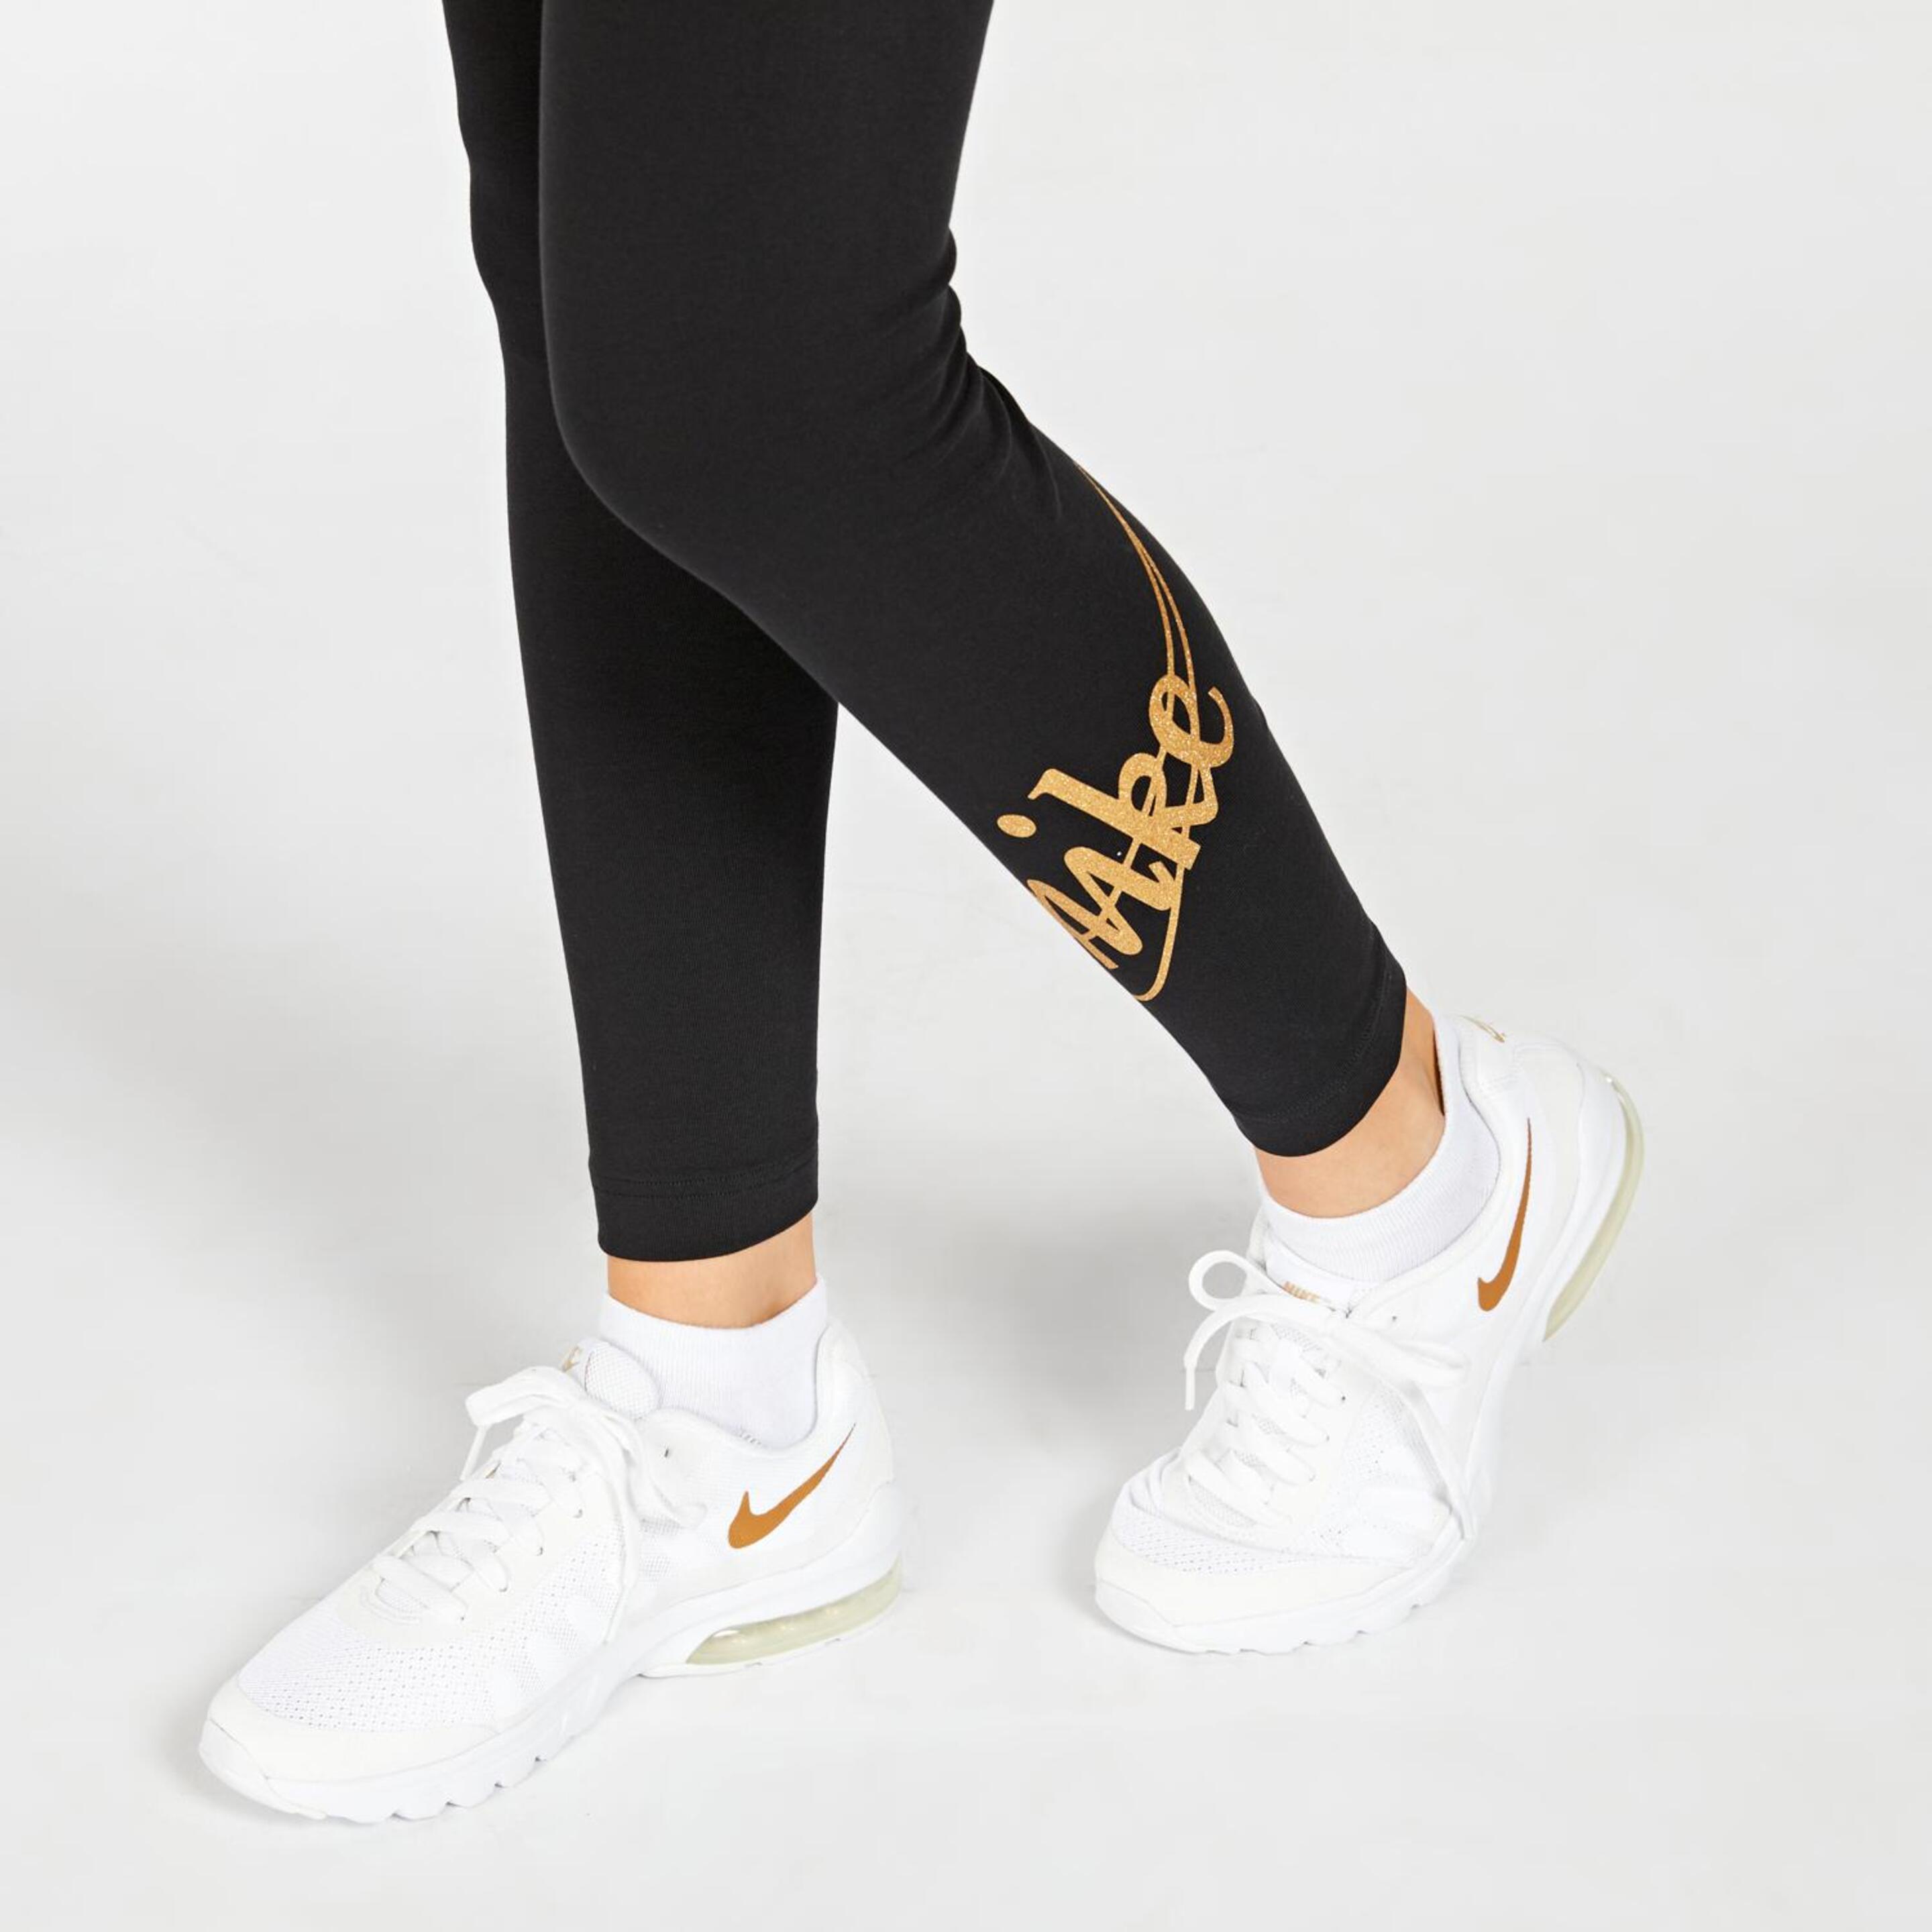 Leggings Nike Gold Swoosh